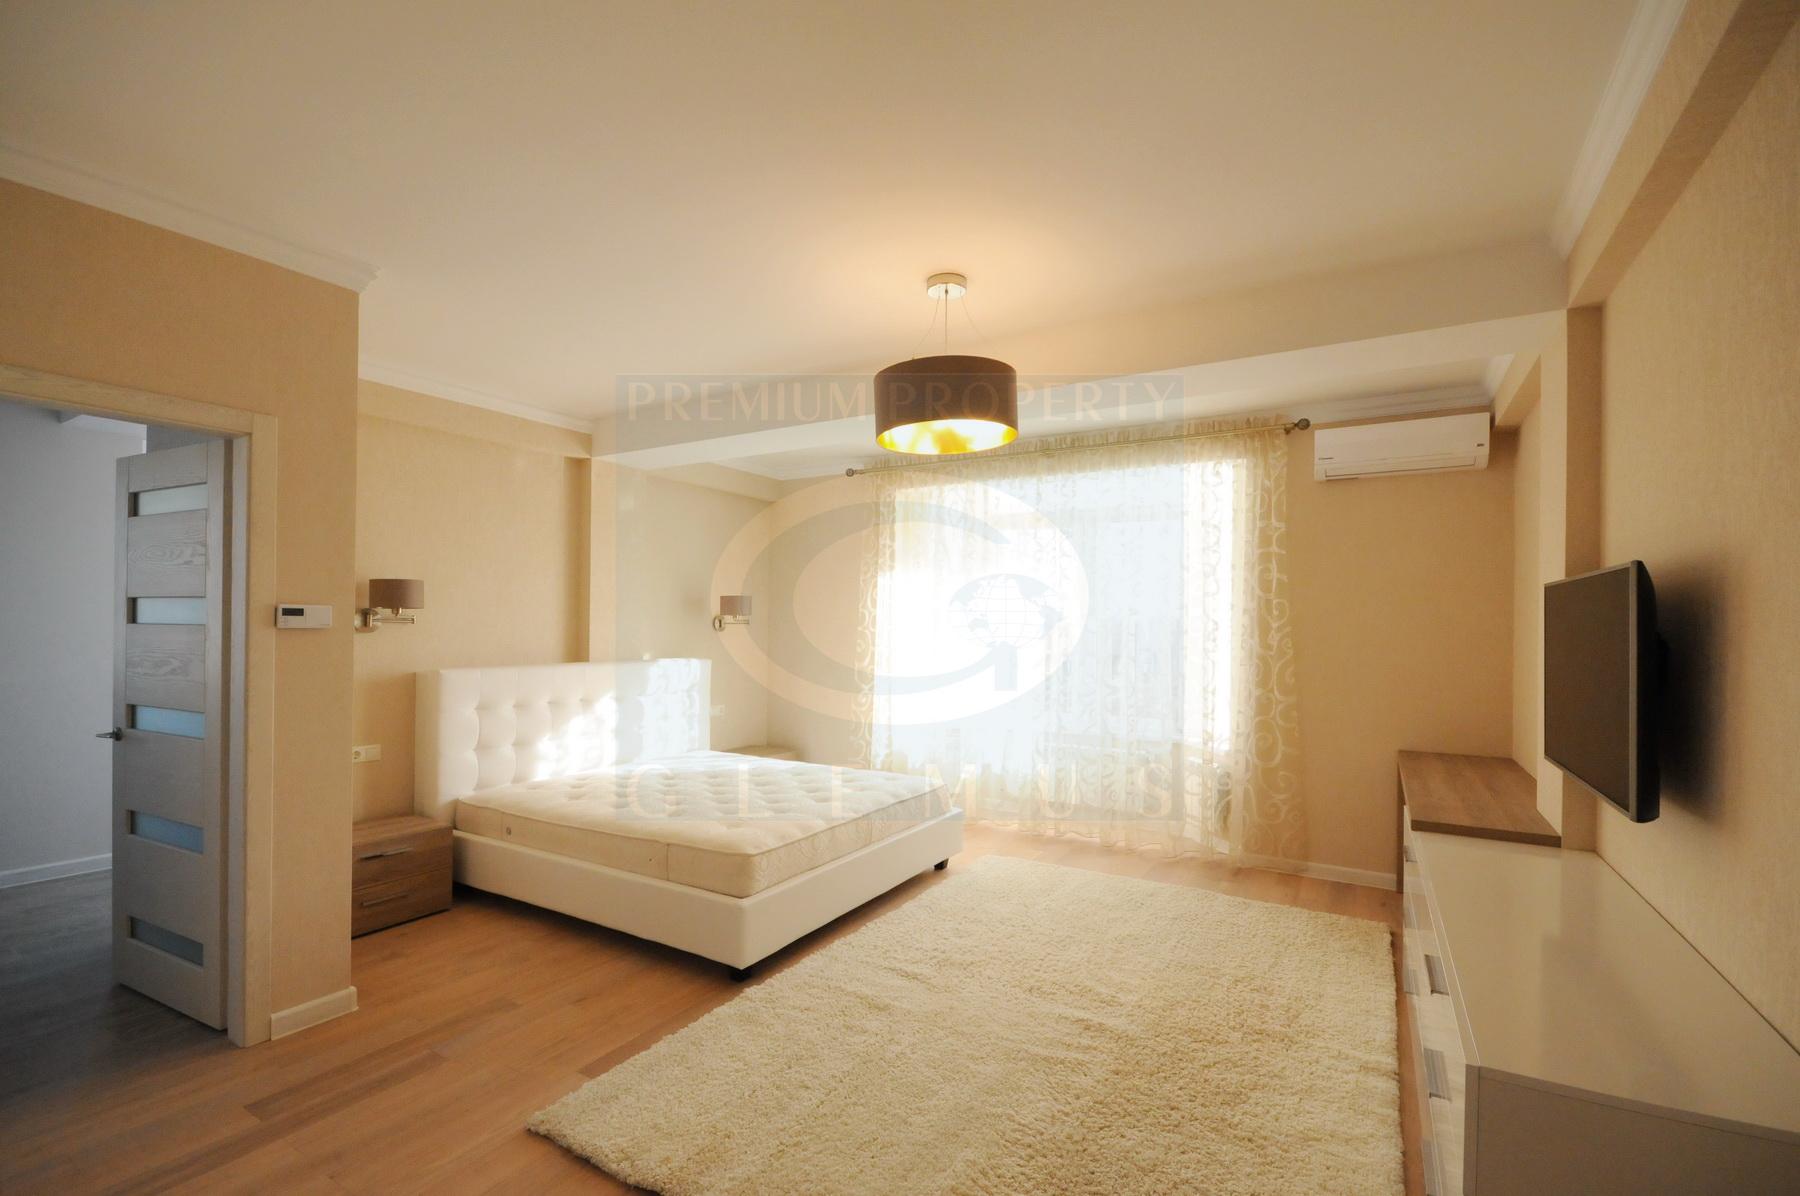 Rent Apartment In Chisinau